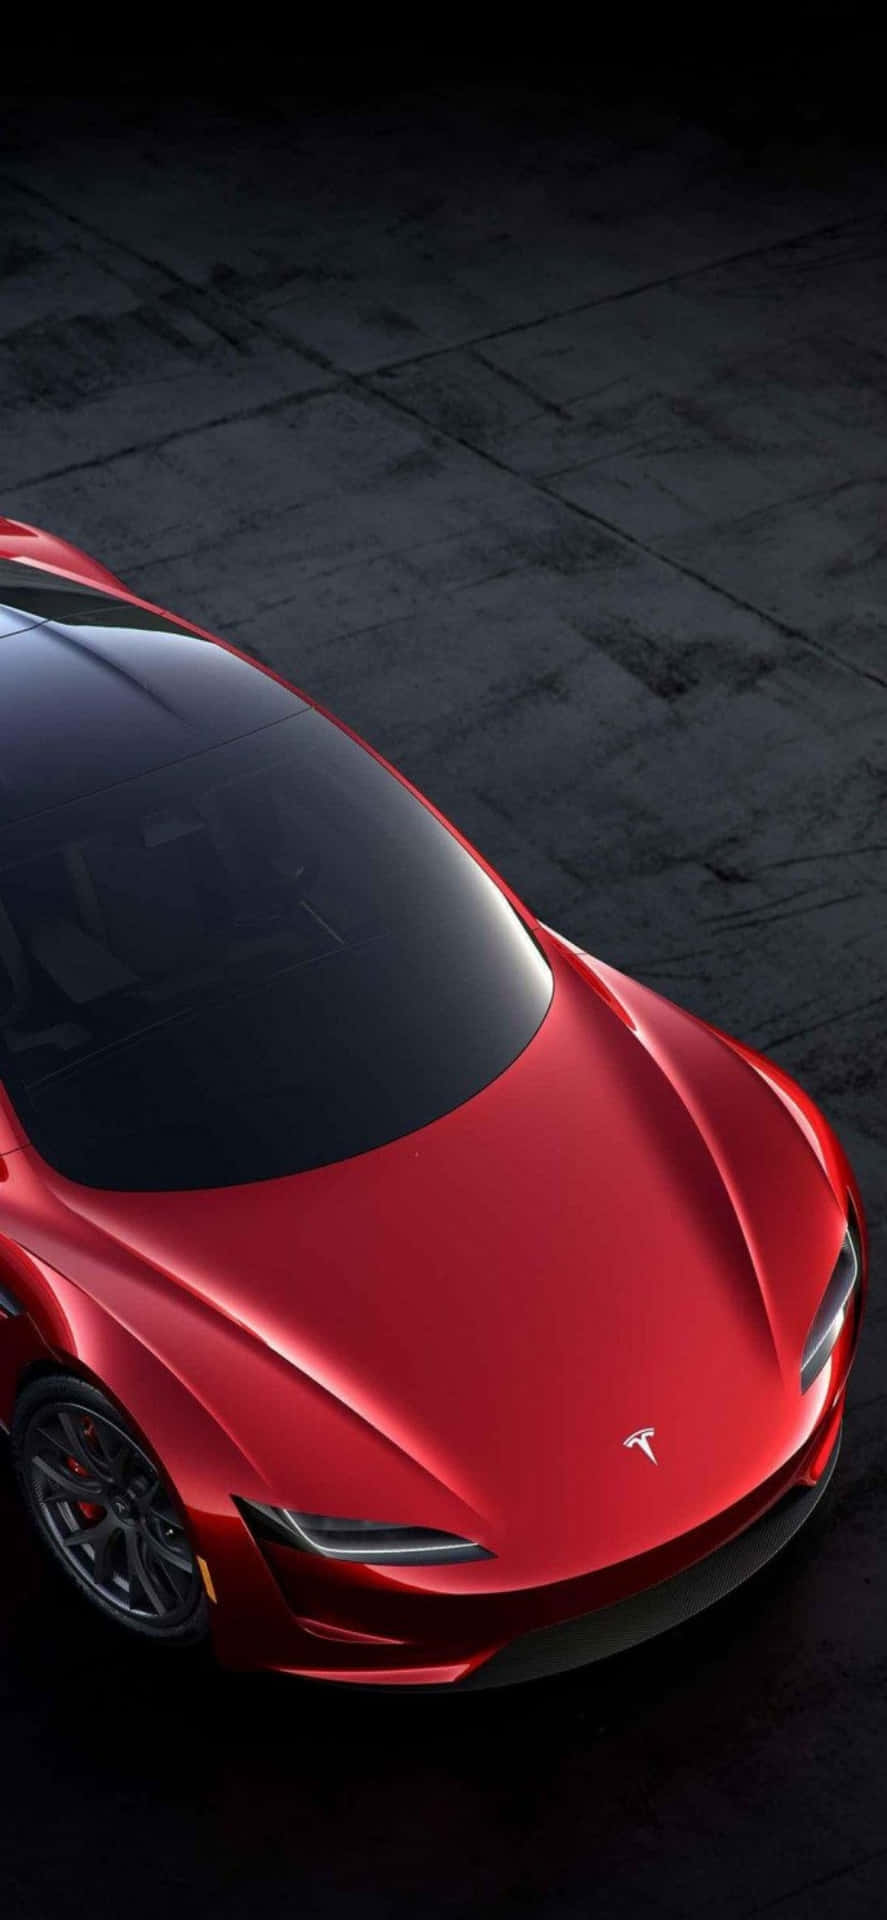 Medsin Överlägsna Prestanda Och Innovativa Design Seglar Tesla Model 3 Förbi Sina Konkurrenter Och Tar Ledningen.